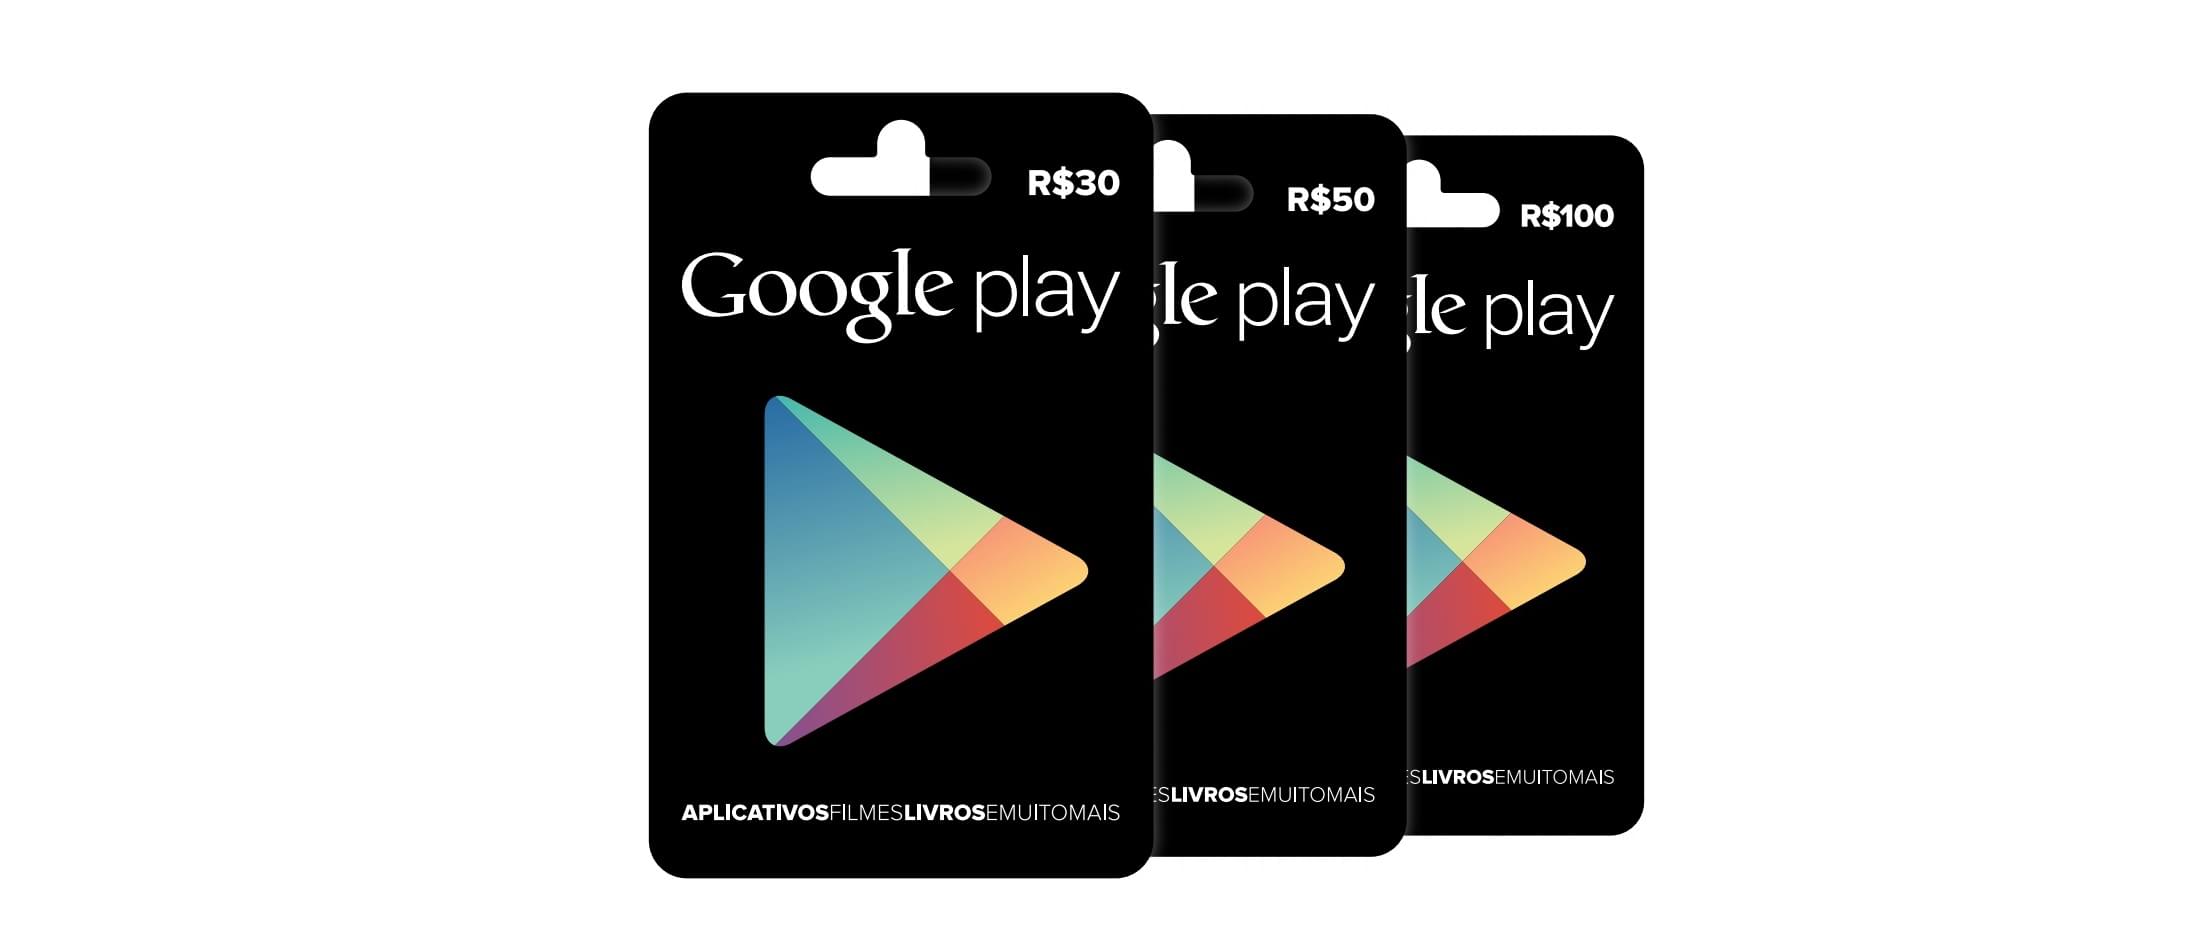 Google Play Gift Cards Brasileiros Podem Ser Encontrados A Partir De Hoje Tecmundo - comprei 50 reais em robux